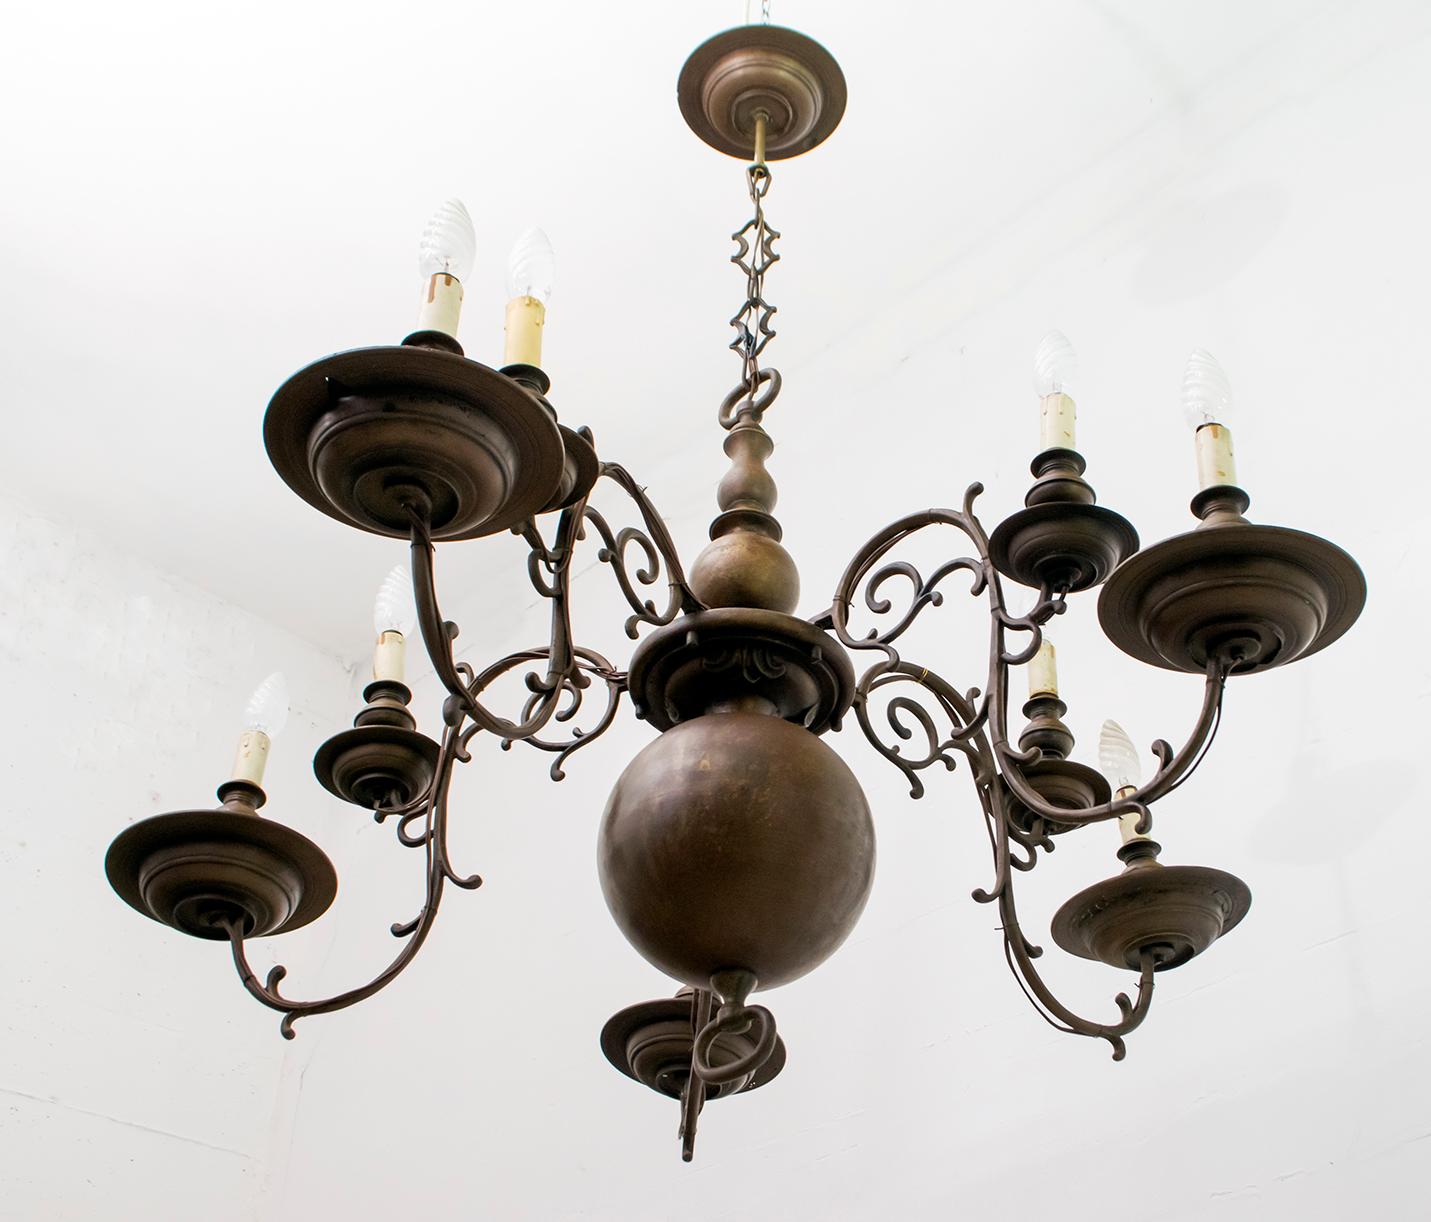 Dieser Kronleuchter aus Bronze von 1700, der in der Antike mit Kerzen betrieben wurde (siehe Zugstange unter der Kugel), wurde später modifiziert und mit E14-Glühbirnen und originalen Holzfassungen von Anfang 1900 elektrisch gemacht.
Der